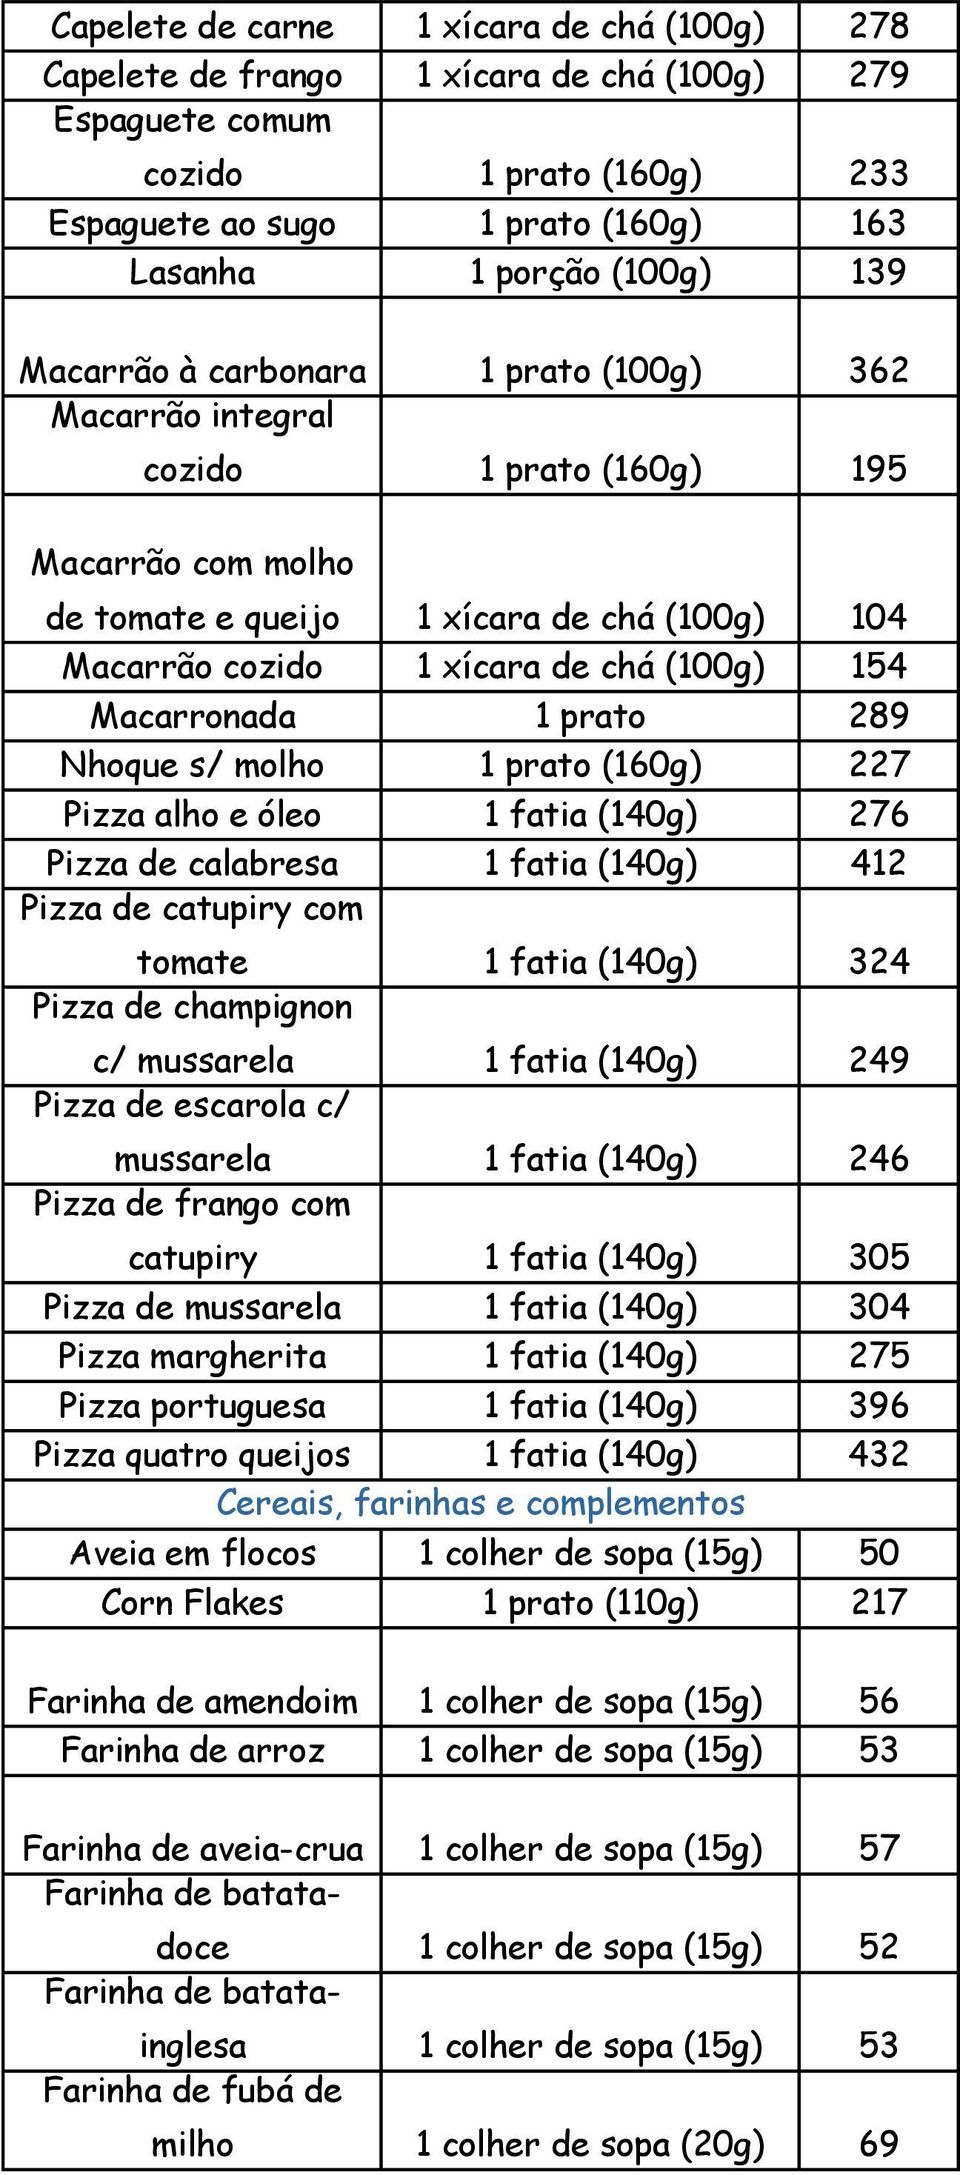 Macarronada 1 prato 289 Nhoque s/ molho 1 prato (160g) 227 Pizza alho e óleo 1 fatia (140g) 276 Pizza de calabresa 1 fatia (140g) 412 Pizza de catupiry com tomate 1 fatia (140g) 324 Pizza de